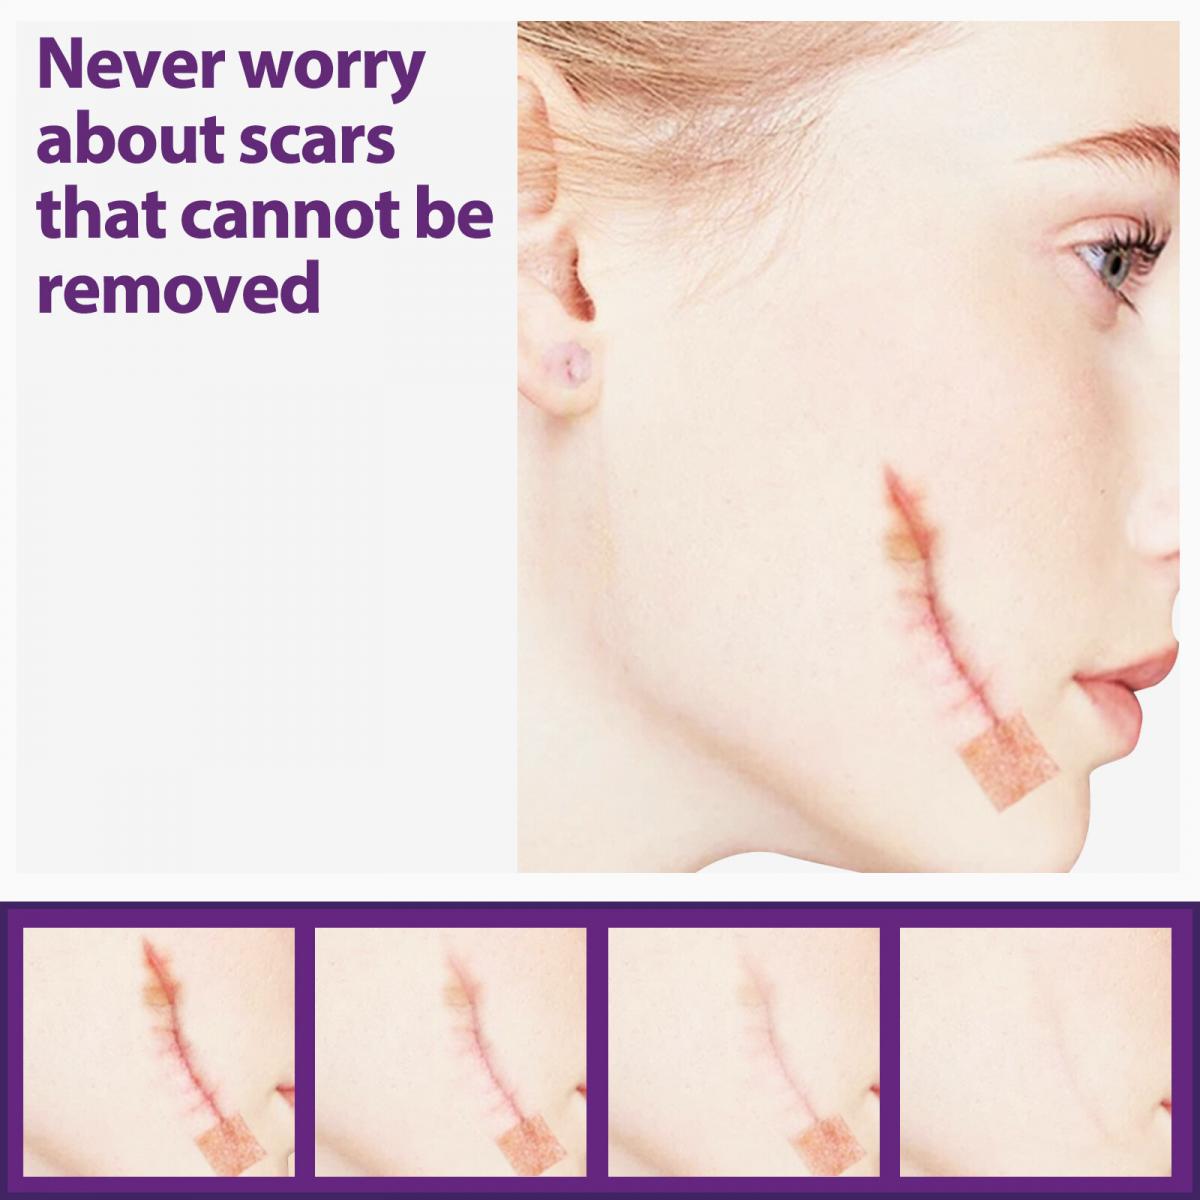 EELHOE 矽胶疤痕贴淡化伤疤妊娠纹烫伤剖腹产手术伤疤增生疤痕疤痕护理